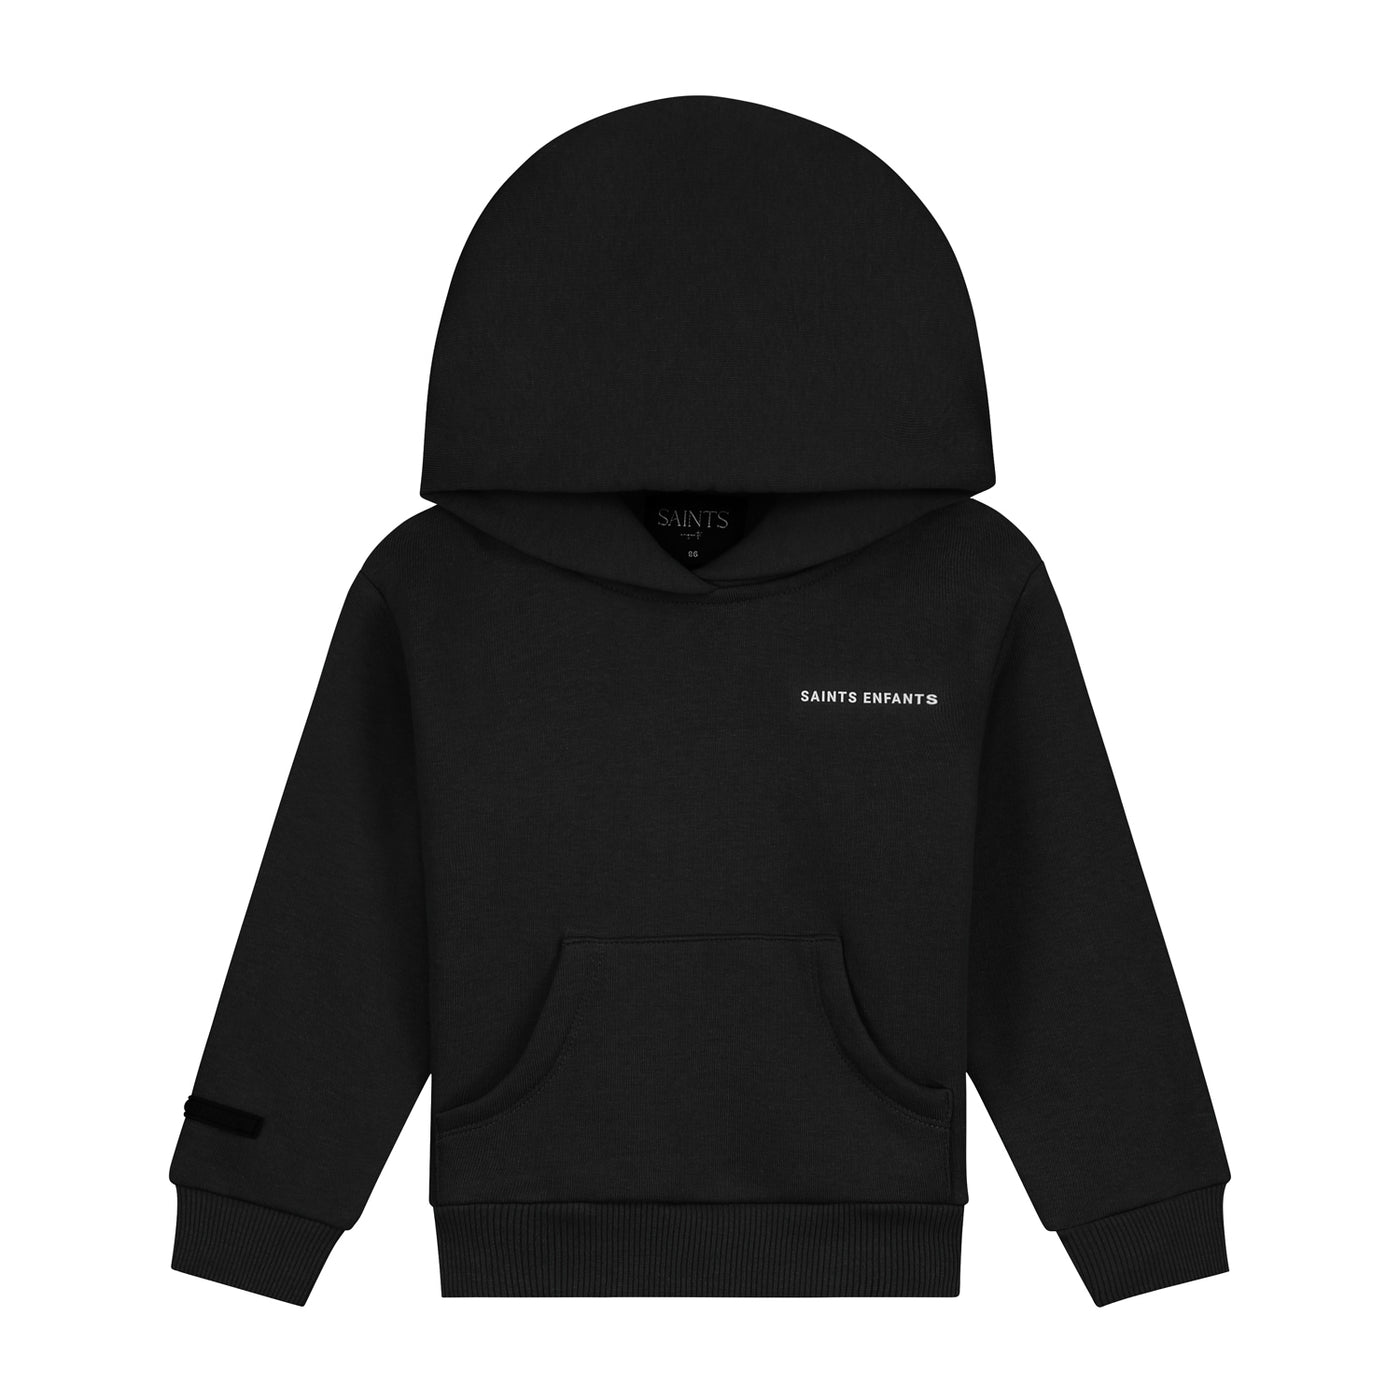 Phantom black hoodie